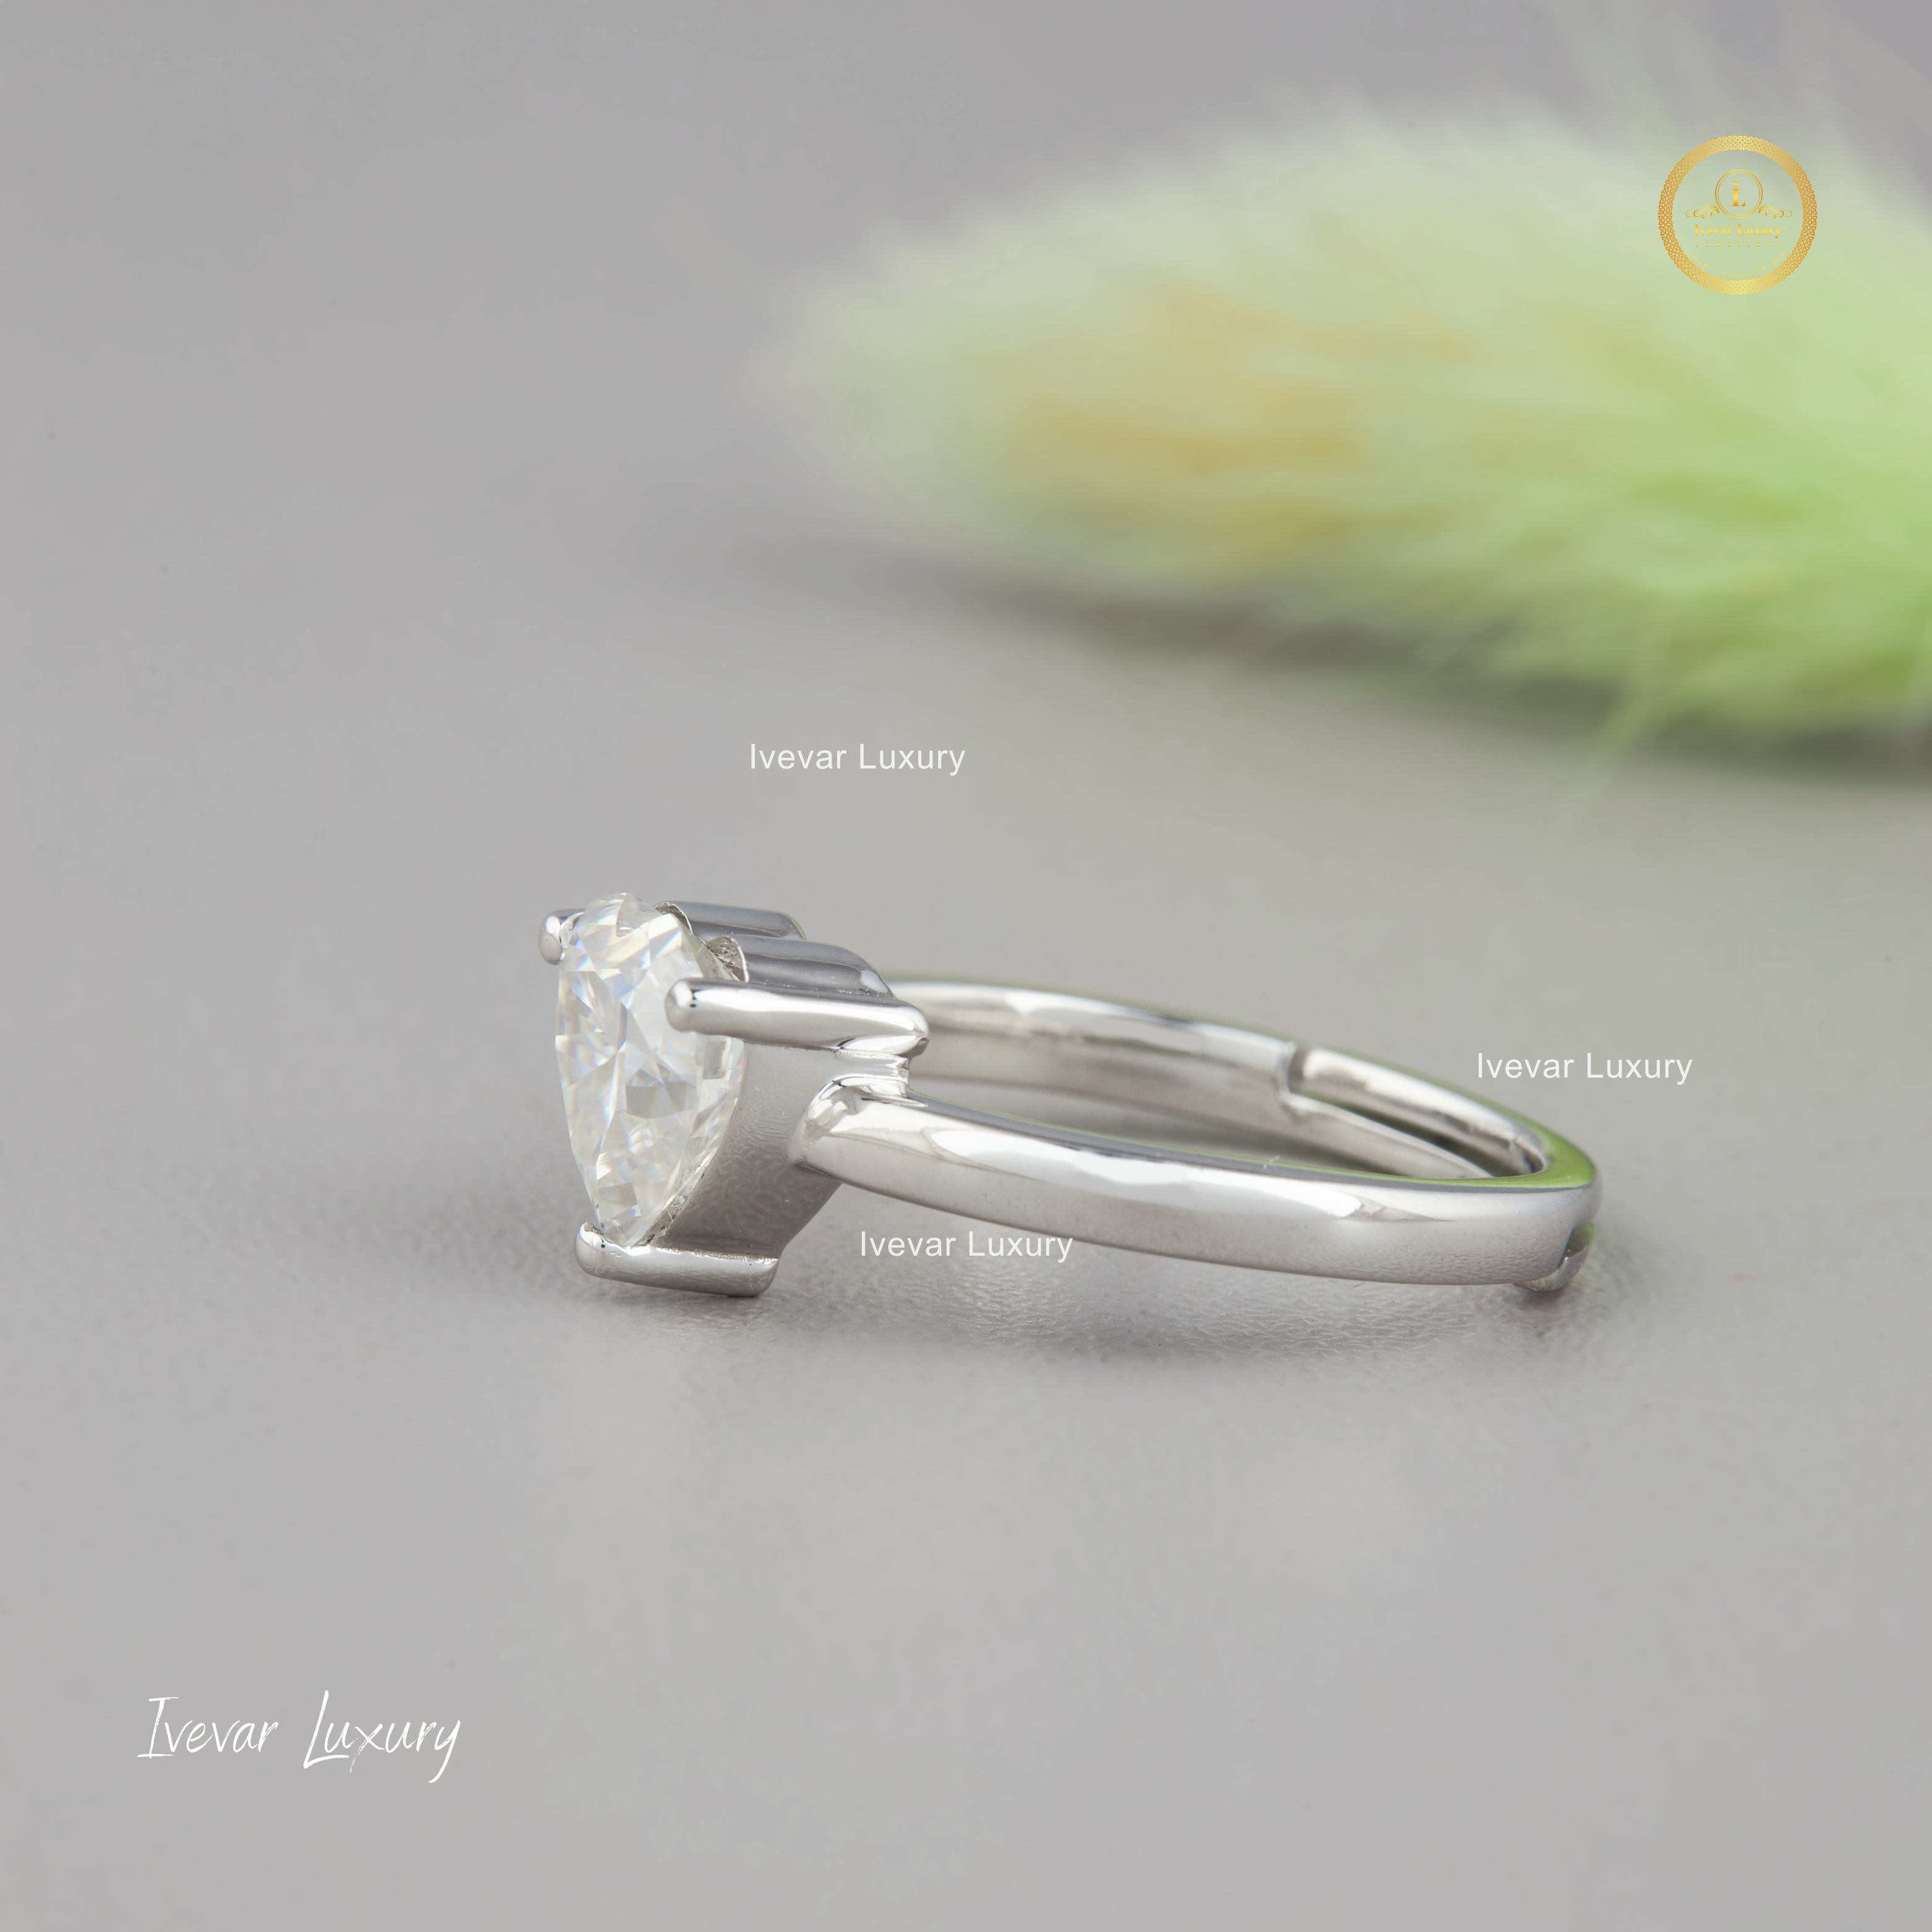 Ivevar 925 Pure Silver Heart Shape Moissanite Diamond Ring